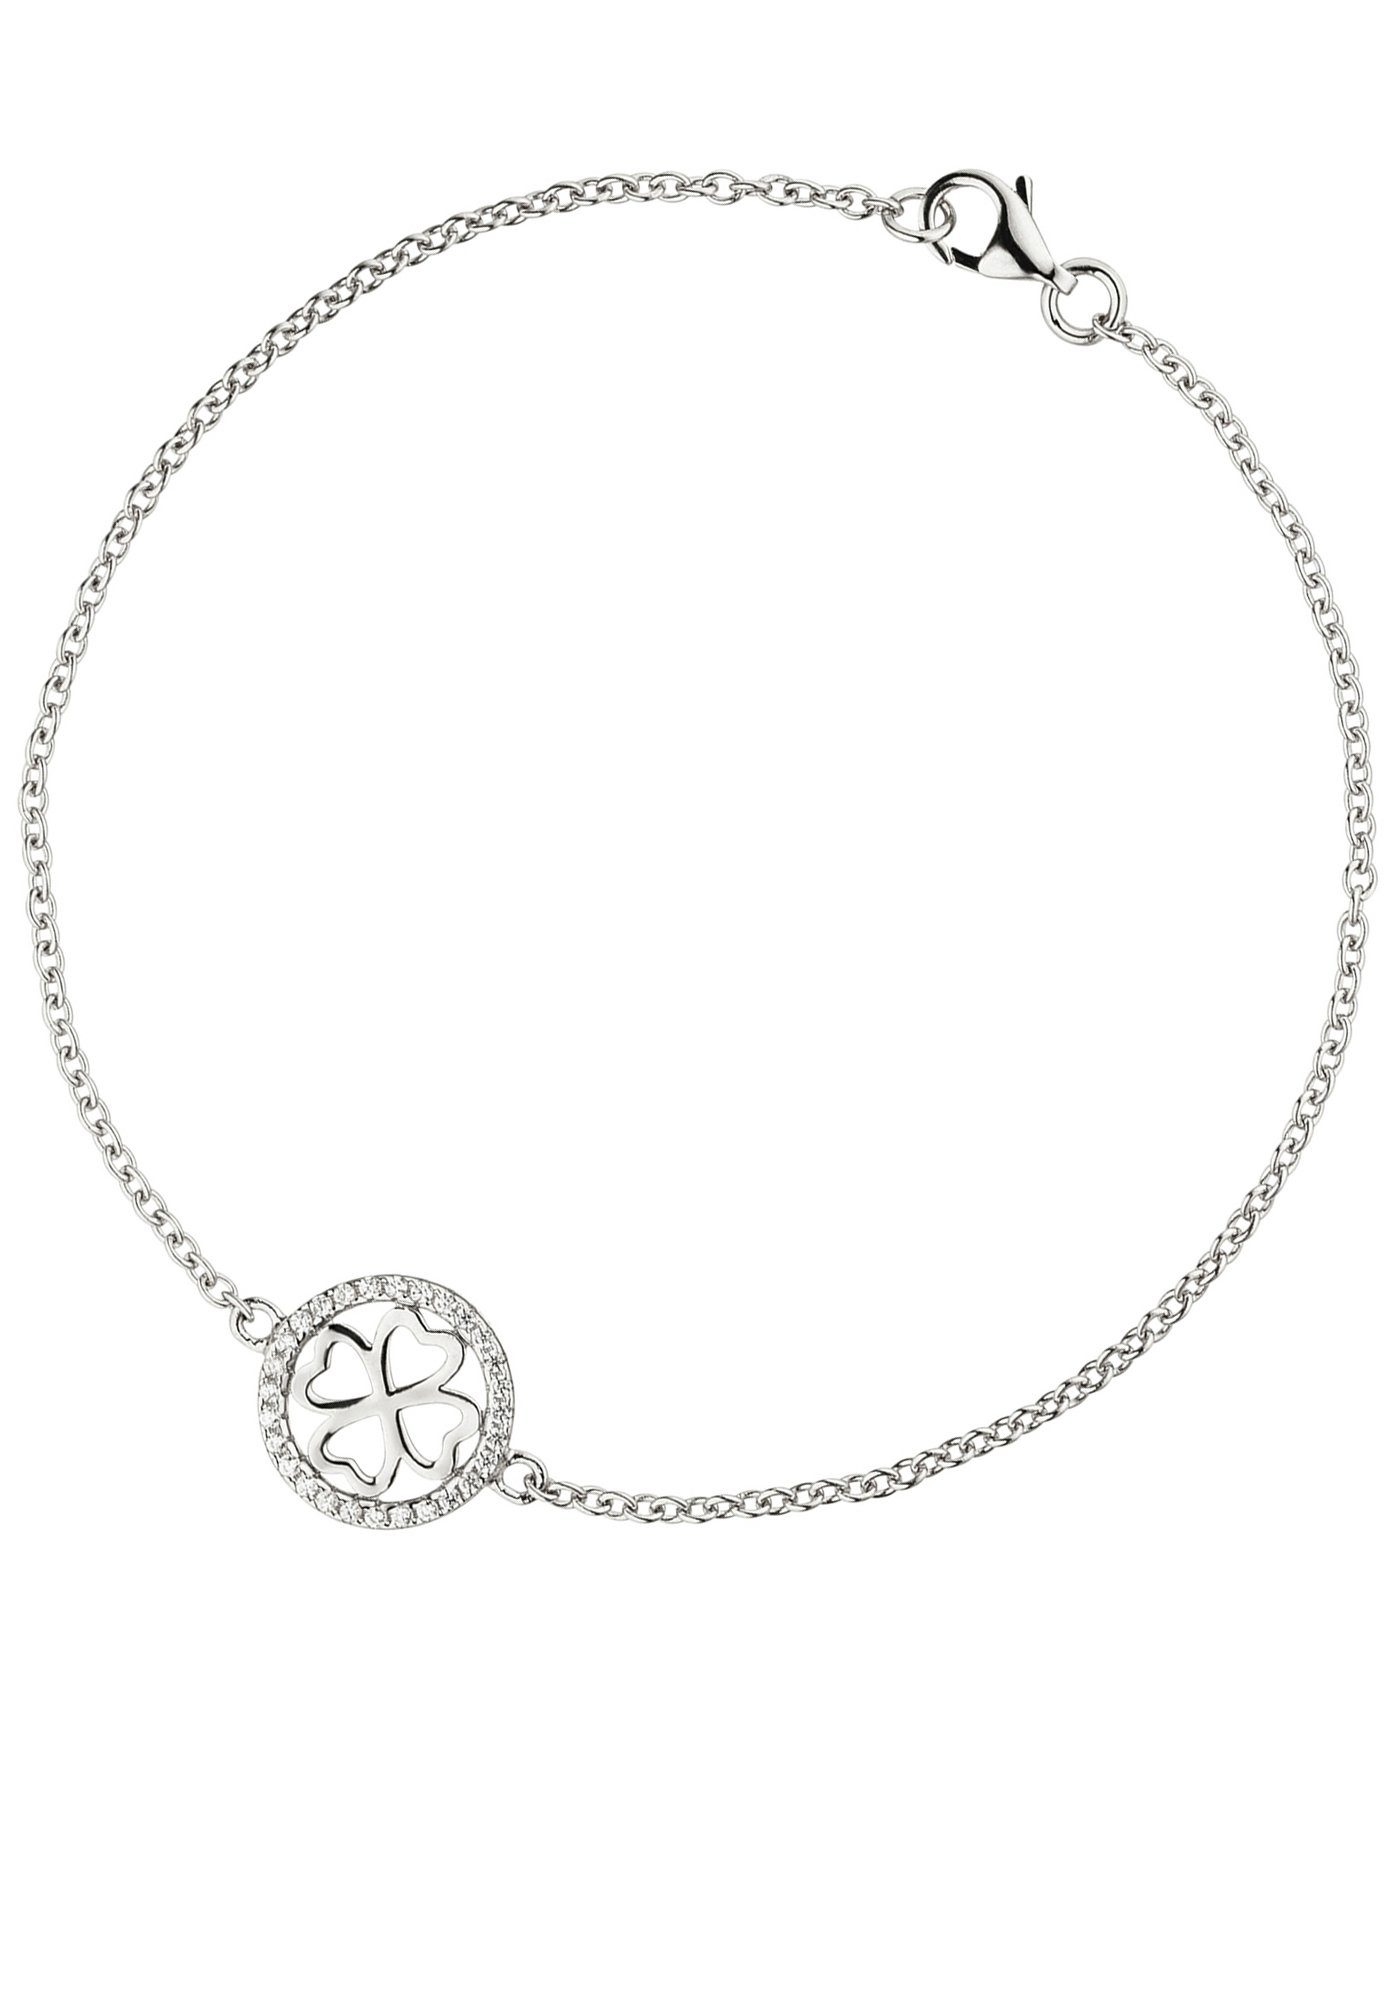 JOBO Silberarmband Kleeblatt-Armband, 925 Silber rhodiniert mit 28 Zirkonia  19 cm | Edelstahlarmbänder